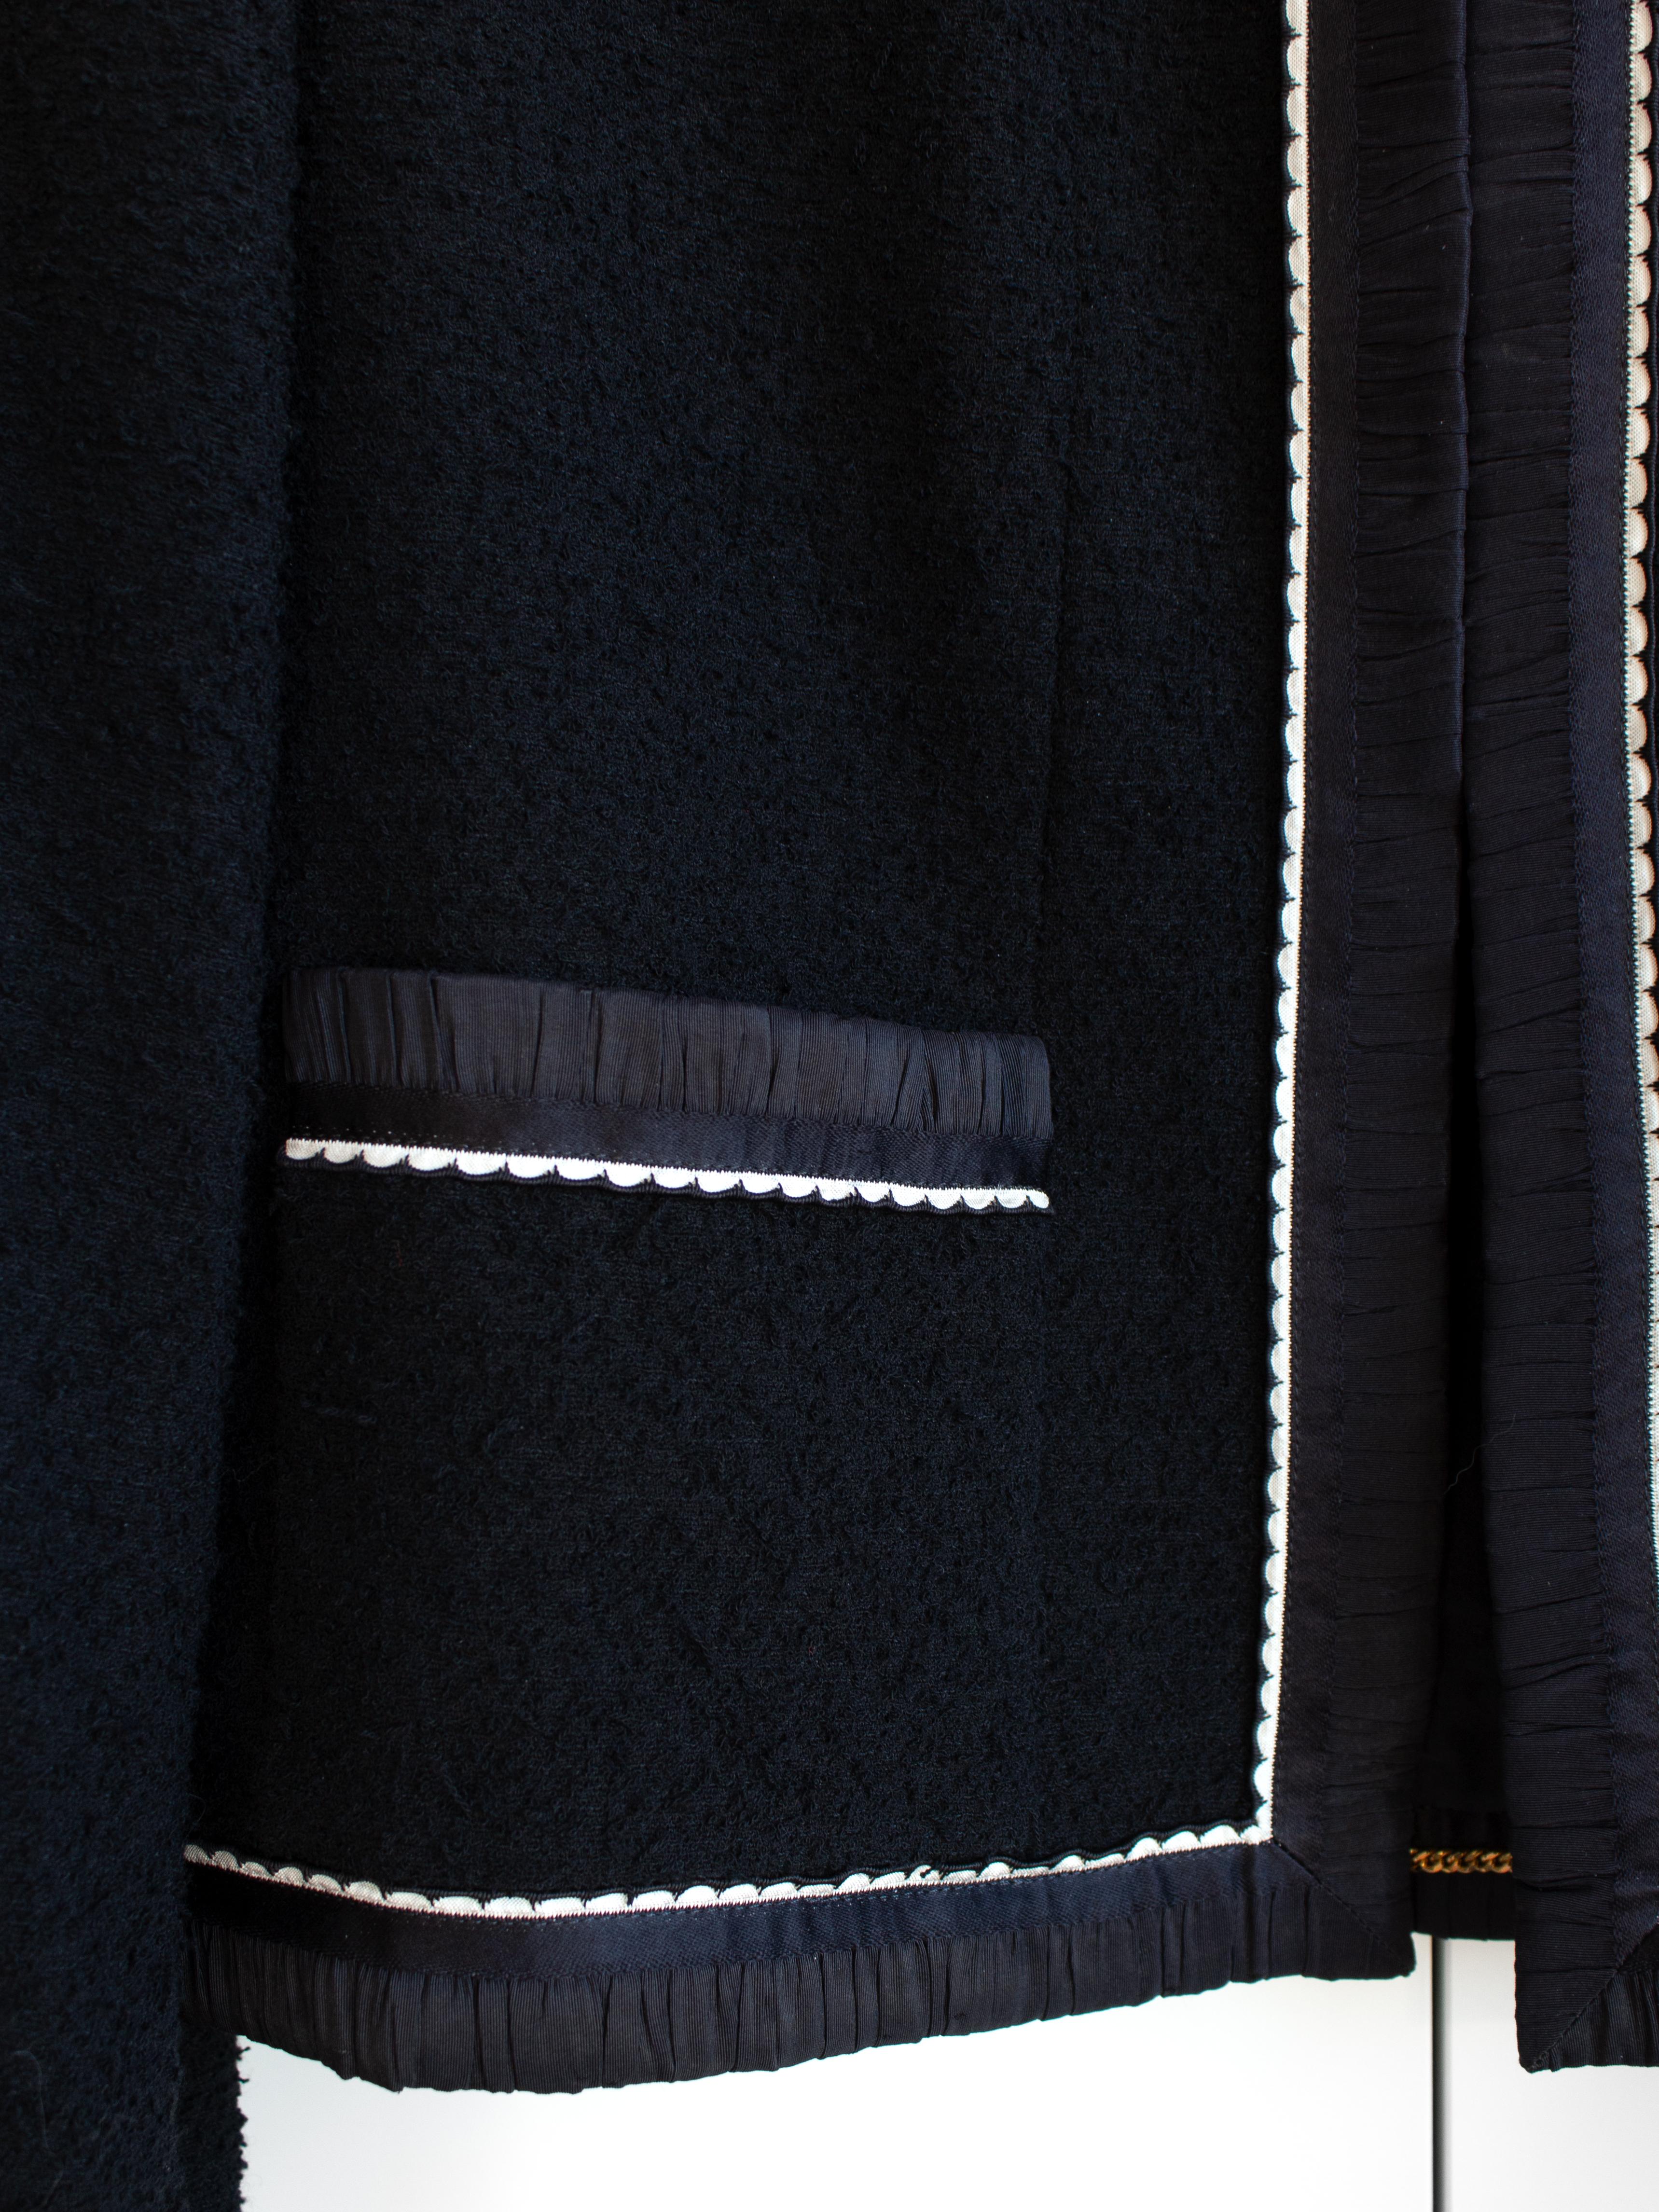 Tailleur jupe emblématique Chanel Vintage S/S1994 bleu marine et blanc bordé de bordures 94P 8